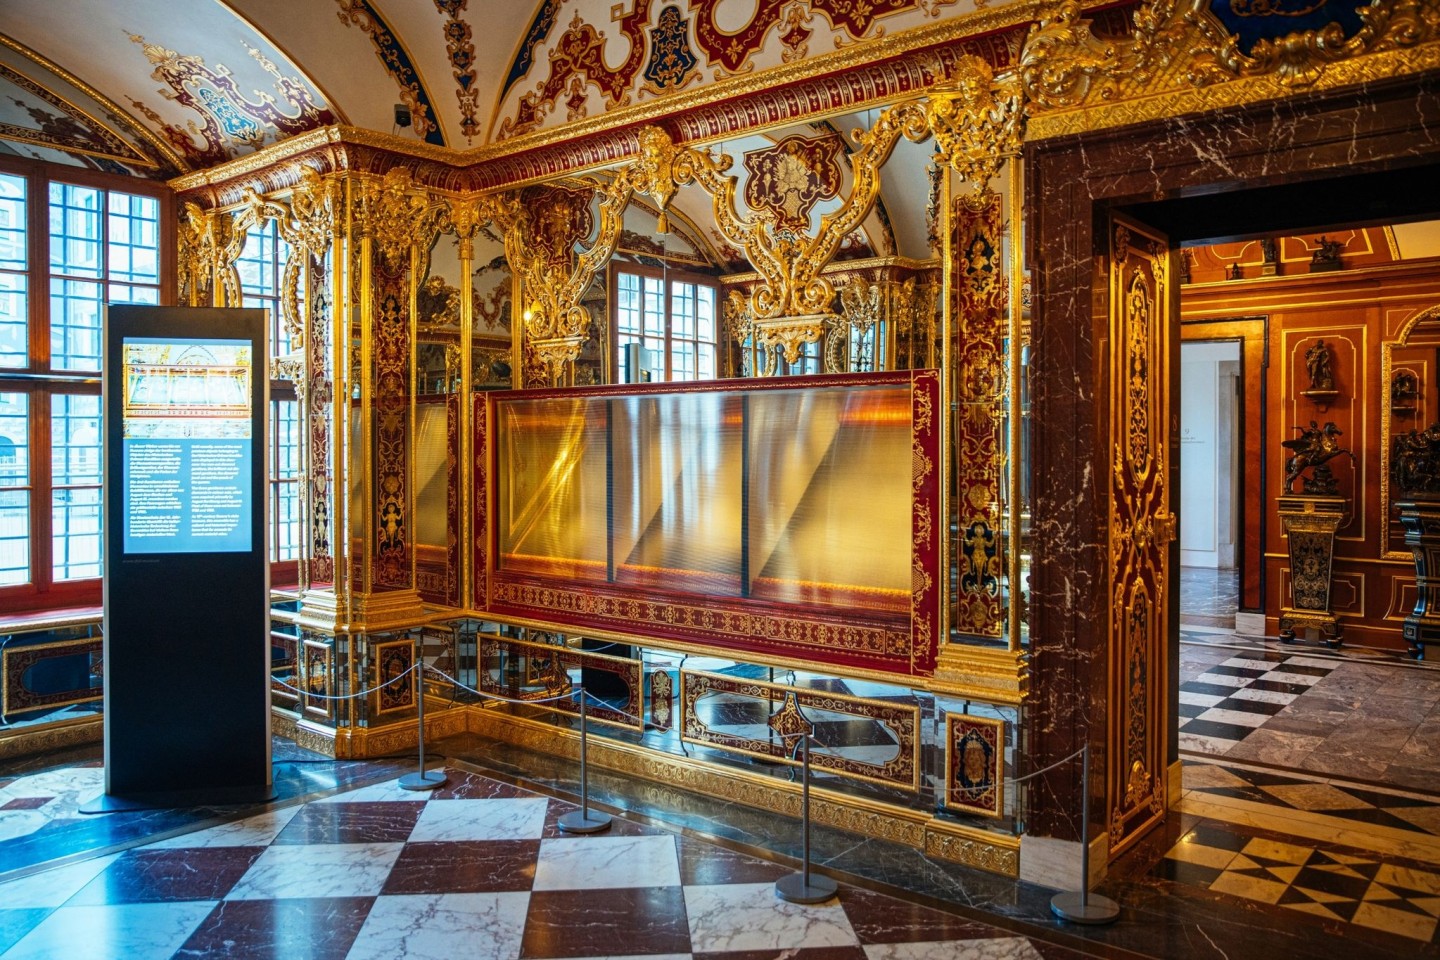 Die ausgeraubte Vitrine im Juwelenzimmer des Historischen Grünen Gewölbes im Residenzschloss in Dresden.